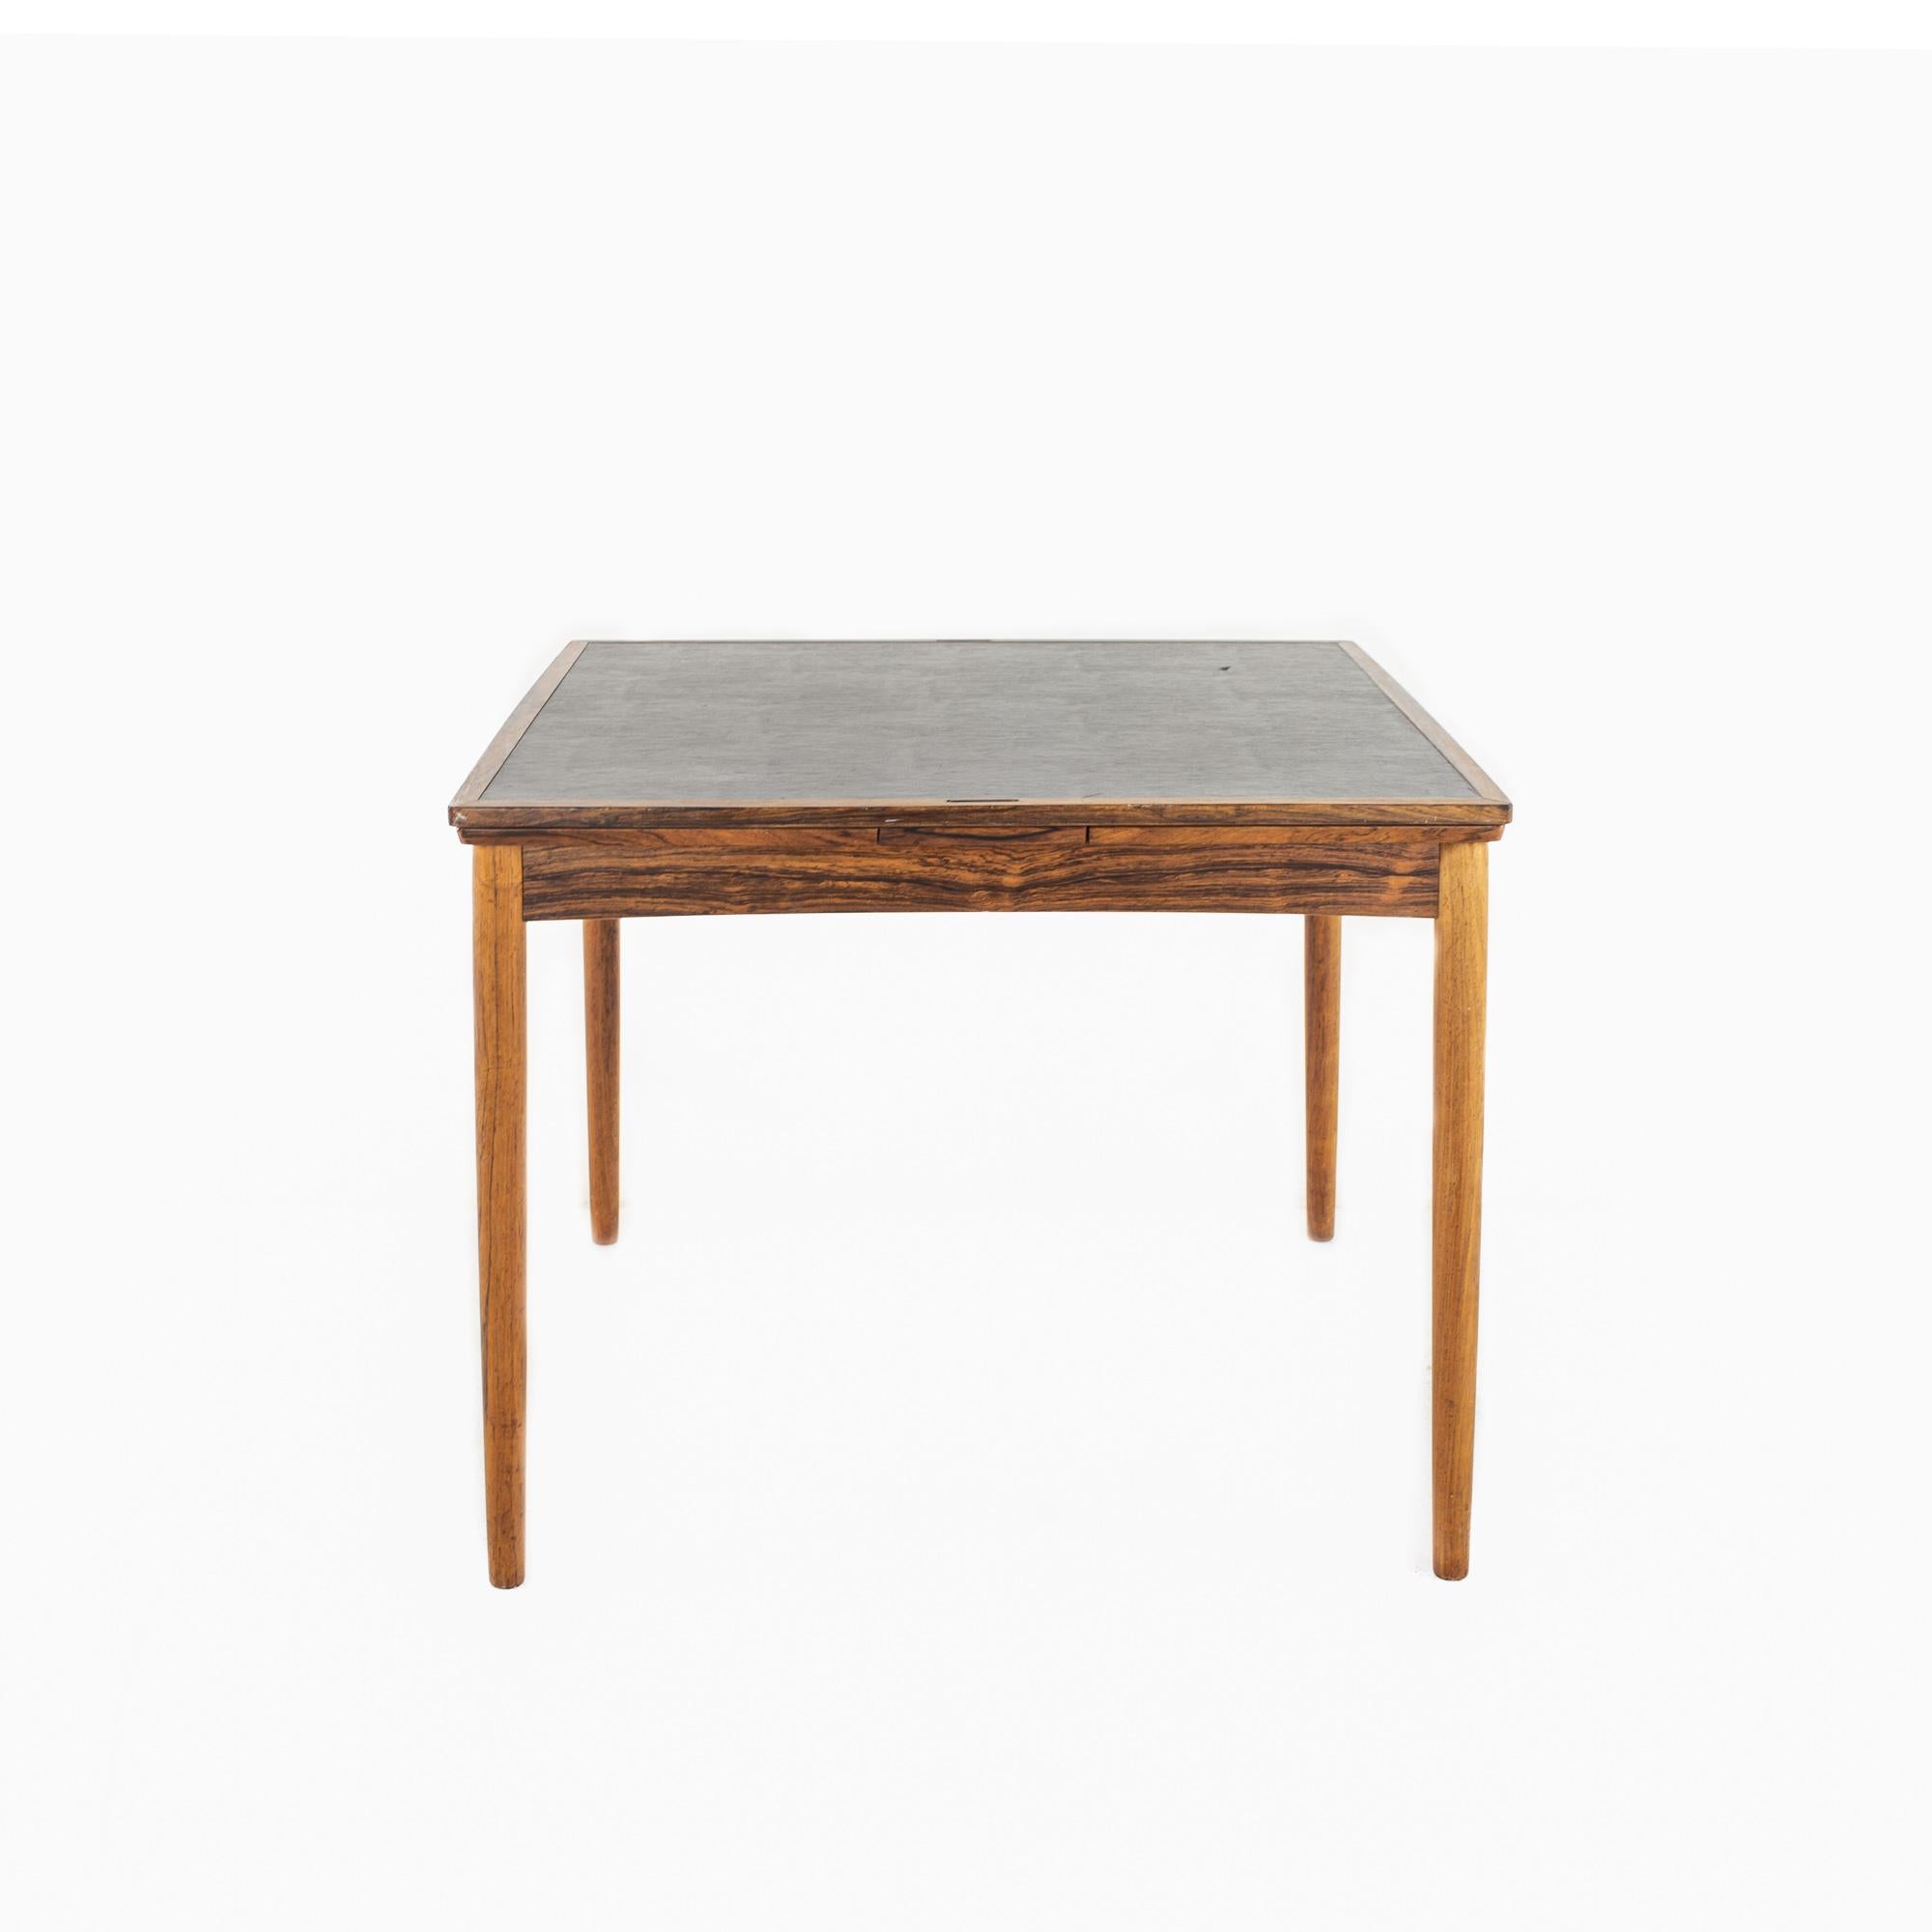 Poul Hundevad, ausziehbarer Spieltisch aus Rosenholz, Mitte des Jahrhunderts

Der Tisch misst: 35,25 breit x 35,25 tief x 27 hoch, mit einer Stuhldurchmesser von 23,5 Zoll; jedes Blatt ist 14 Zoll breit, was eine maximale Tischbreite von 63,25